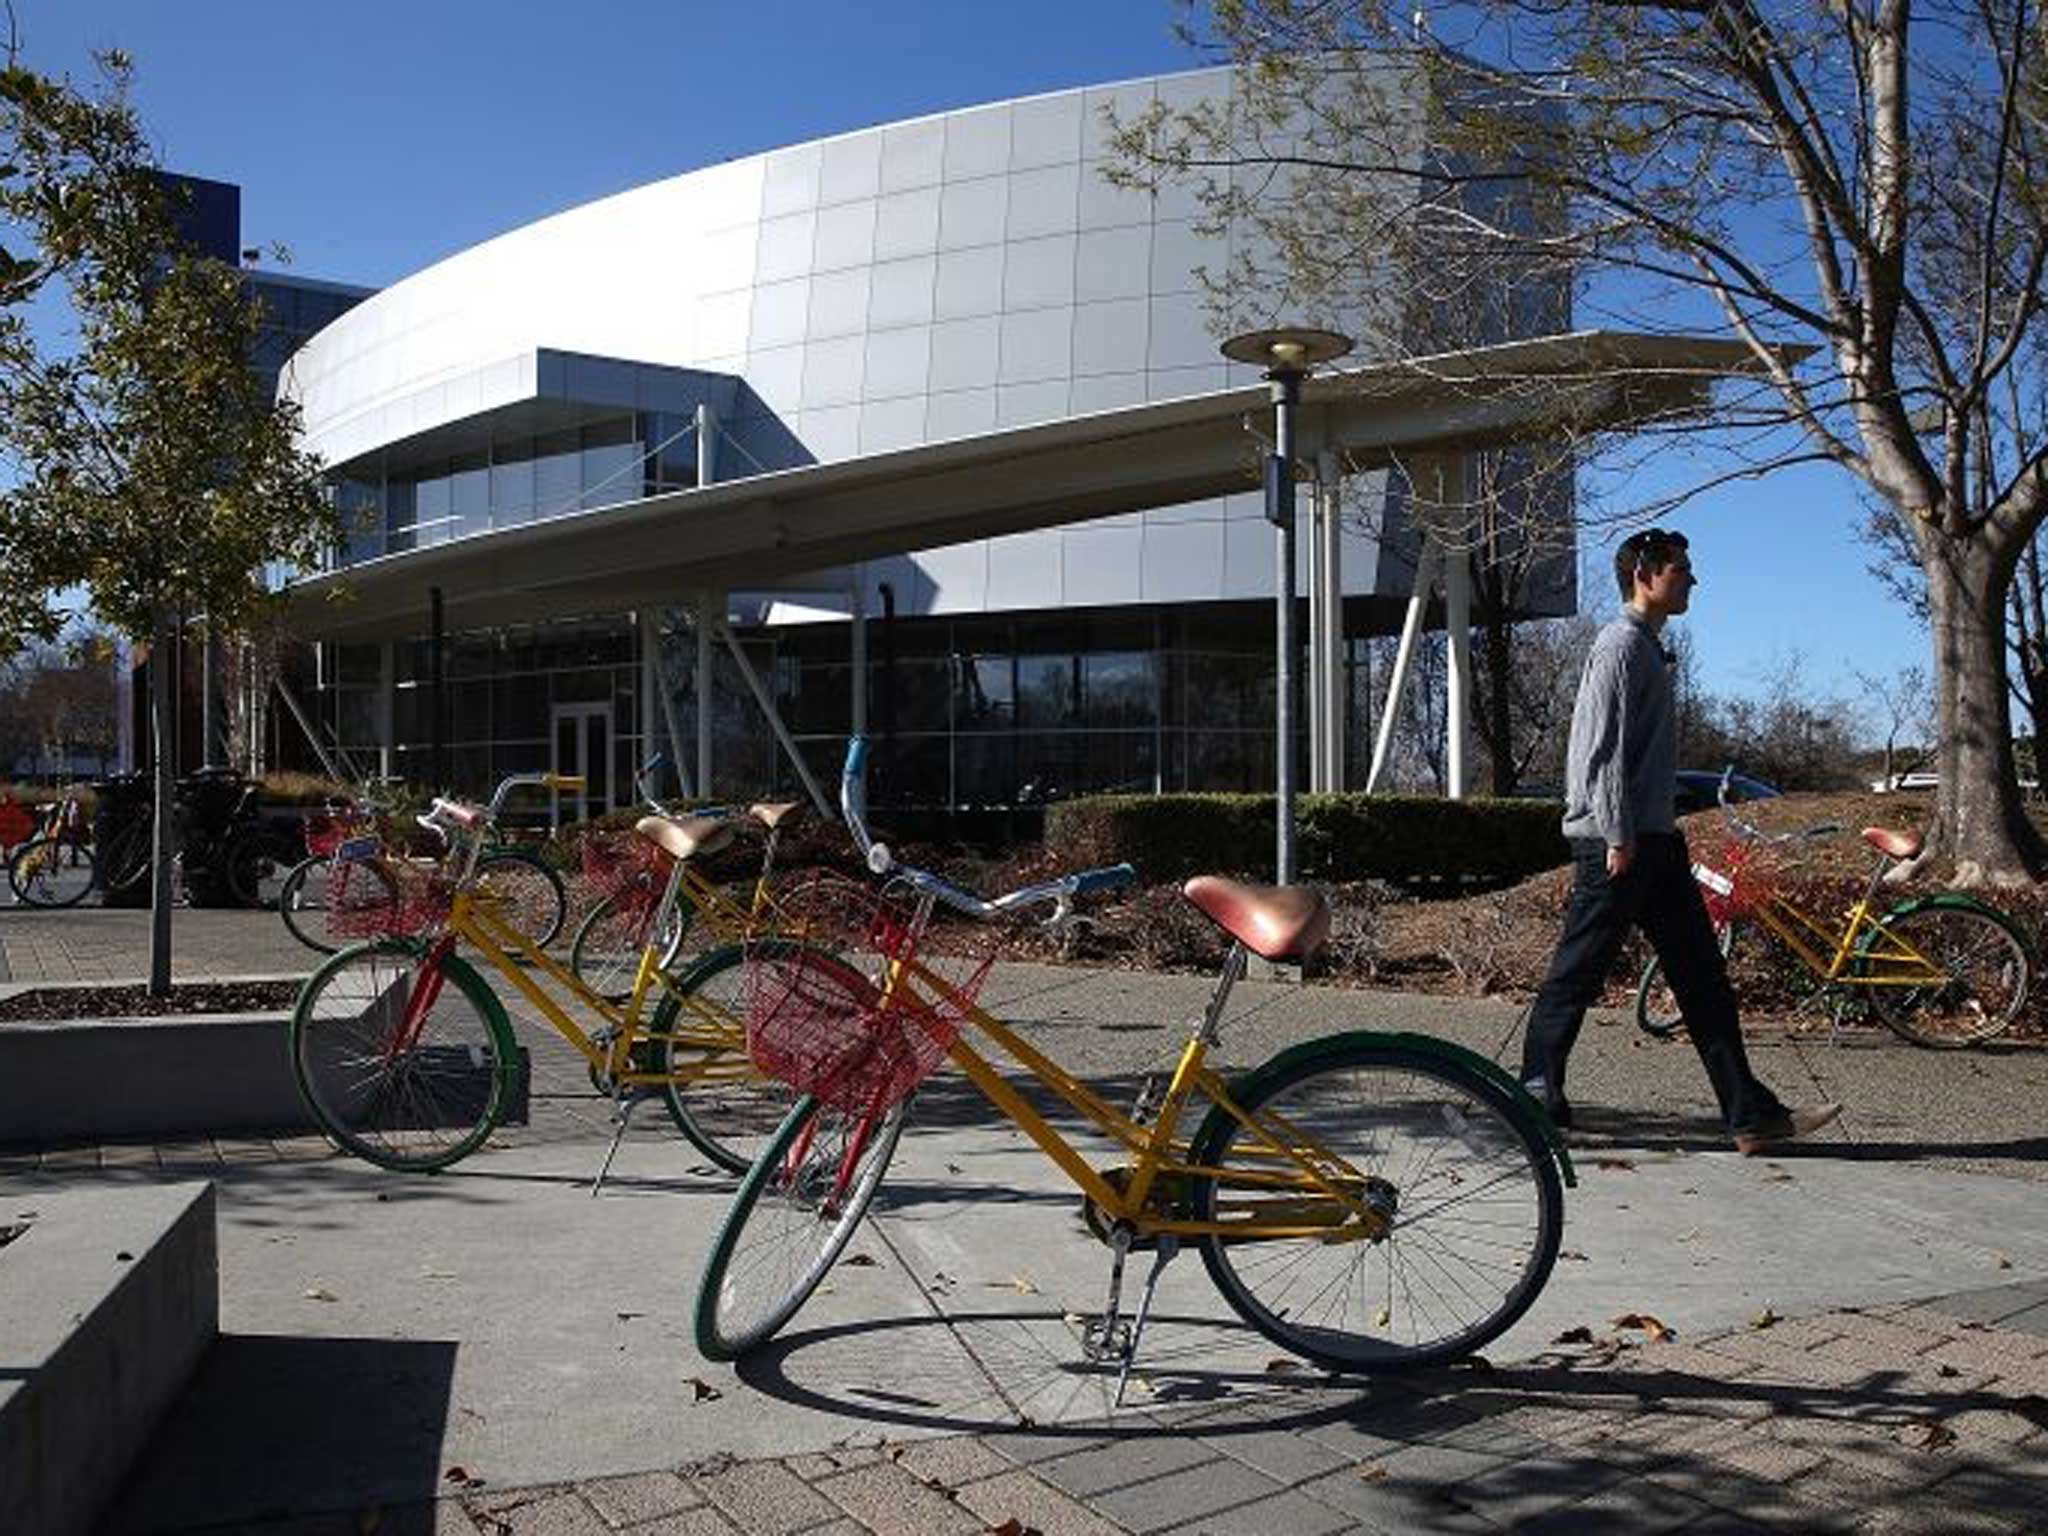 Nerd centre: The multi-colour Google bikes